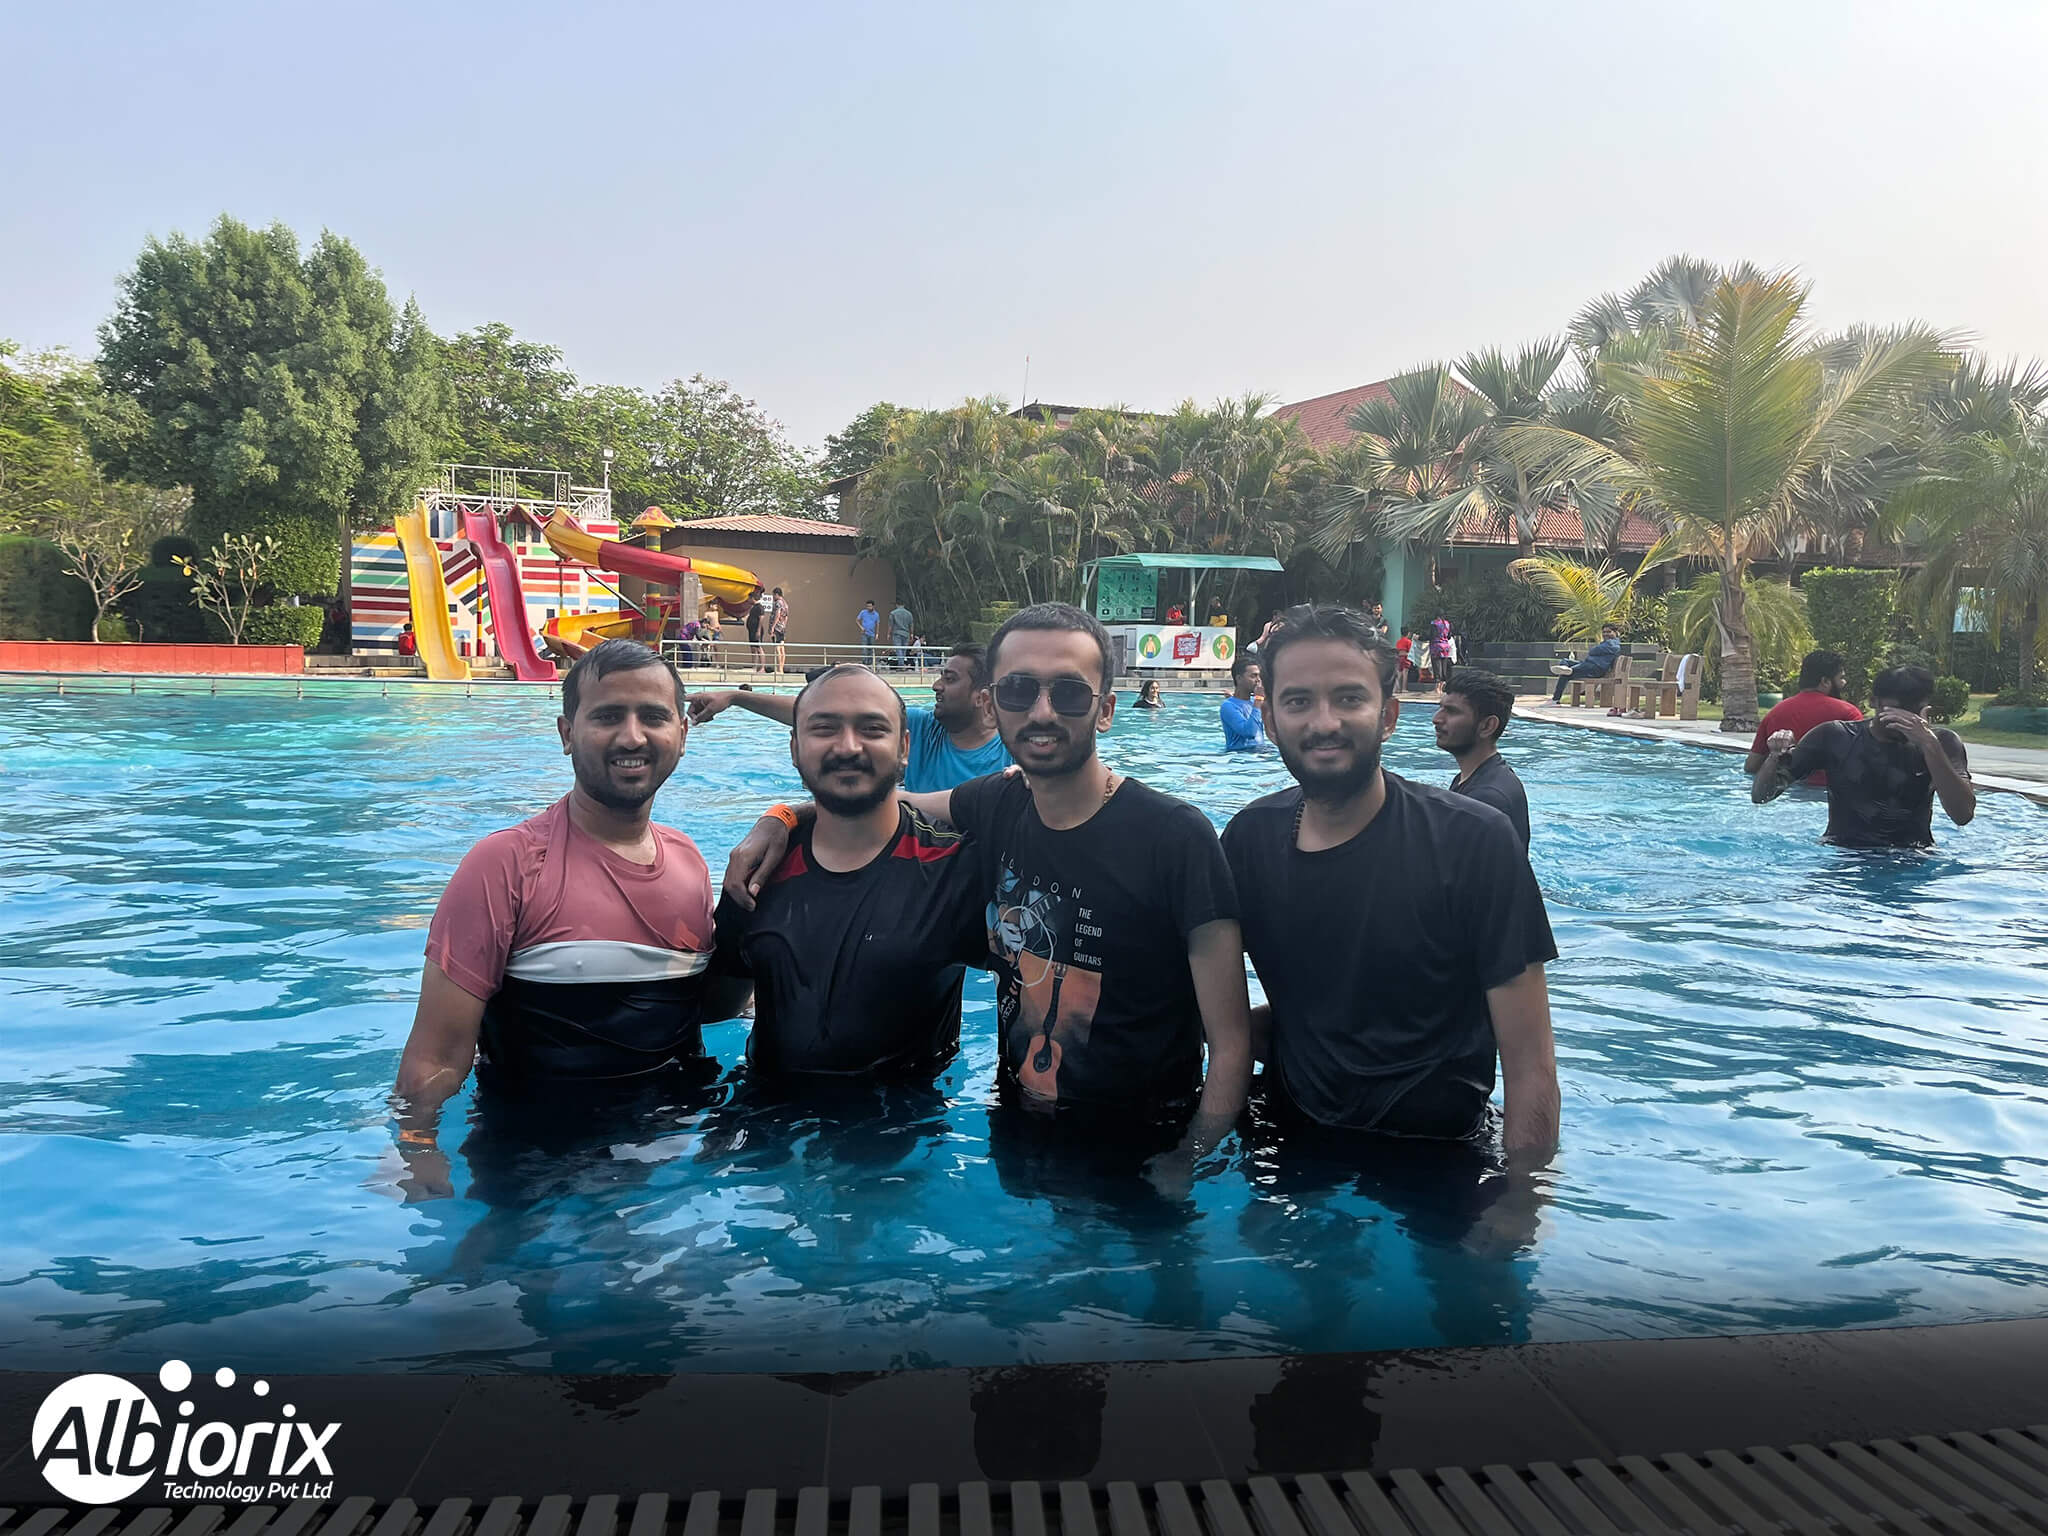 Albiorix team in Pool at 100 acres club